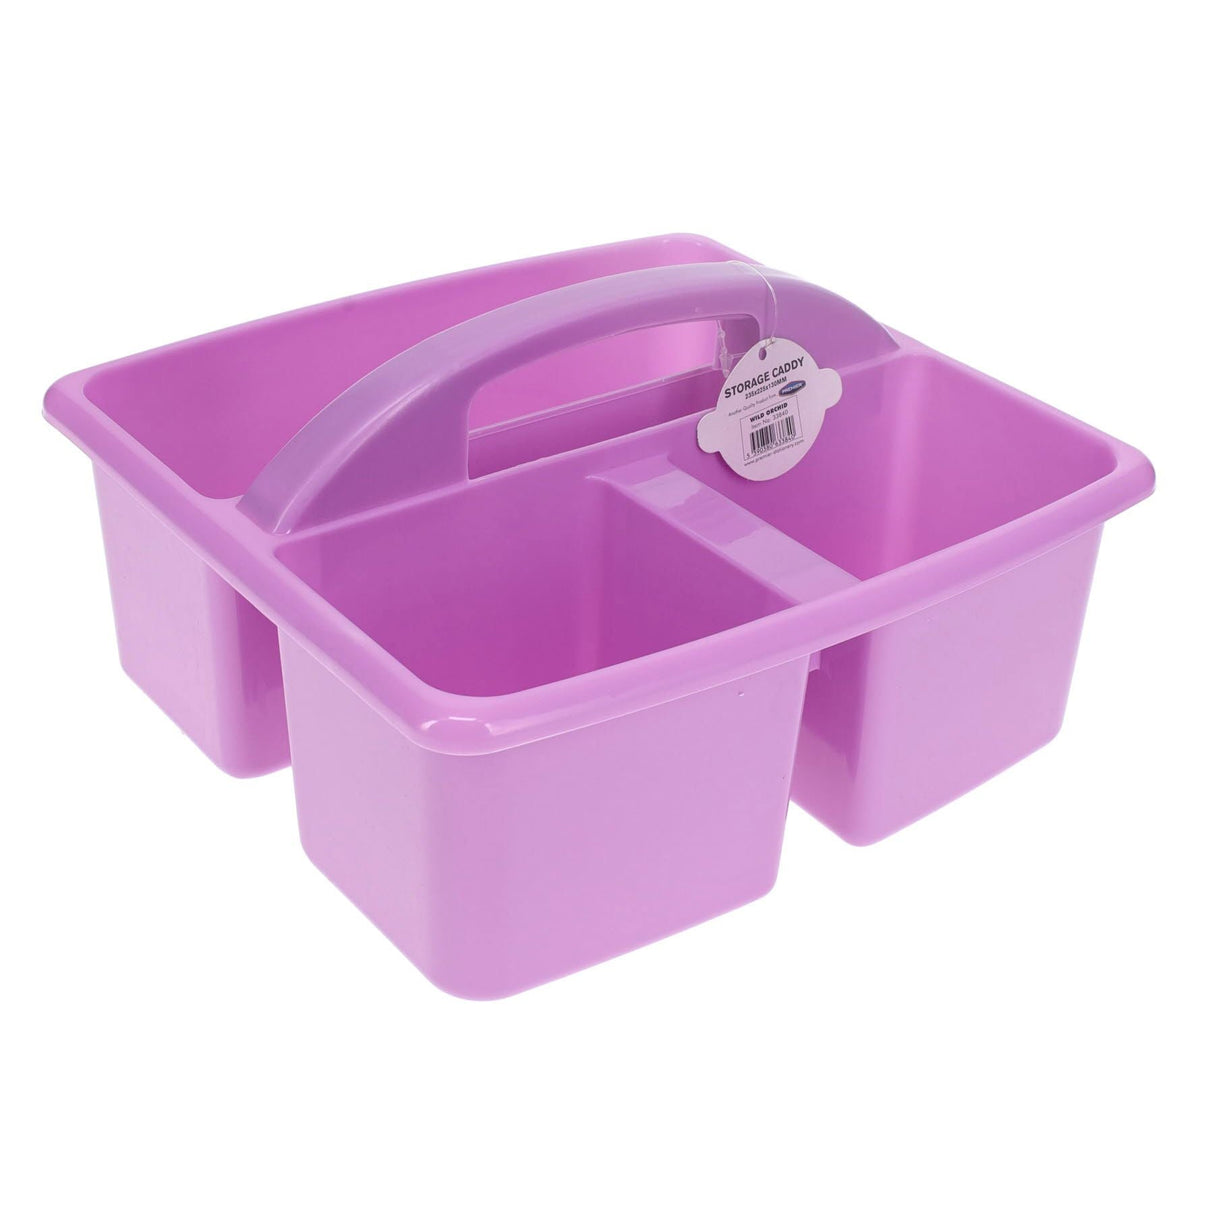 Premto Pastel Storage Caddy - 235x225x130mm - Wild Orchid Purple | Stationery Shop UK